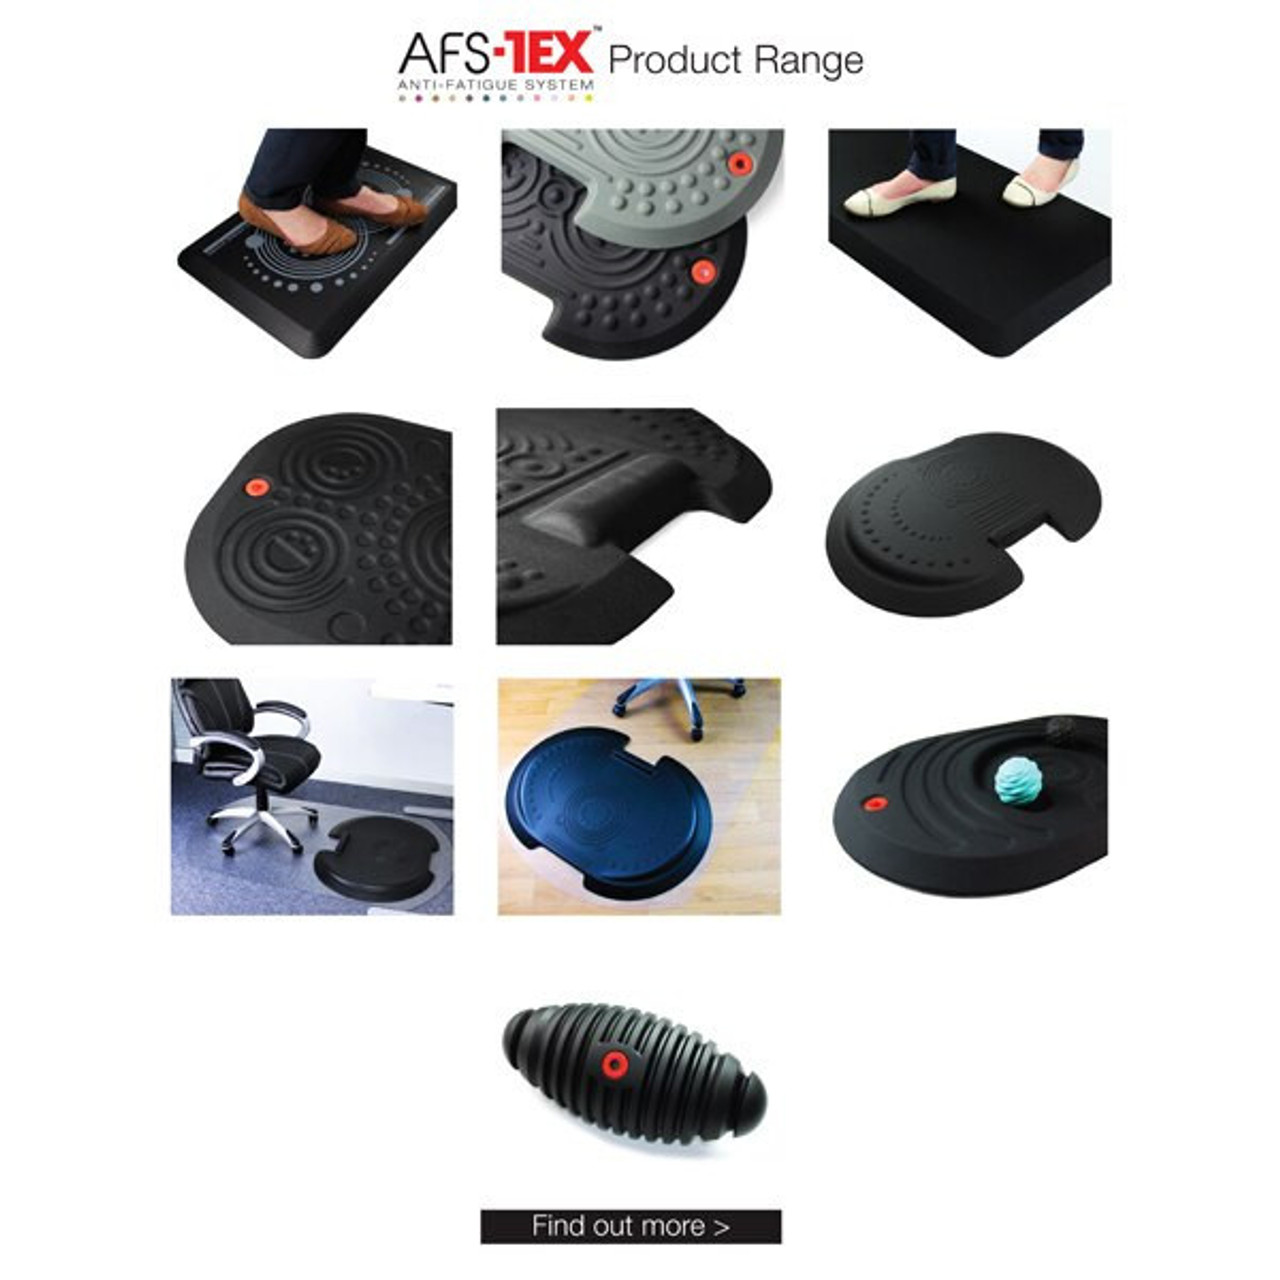 Anti Fatigue Mat Ergonomic Standing Desk Mat with Massage Roller